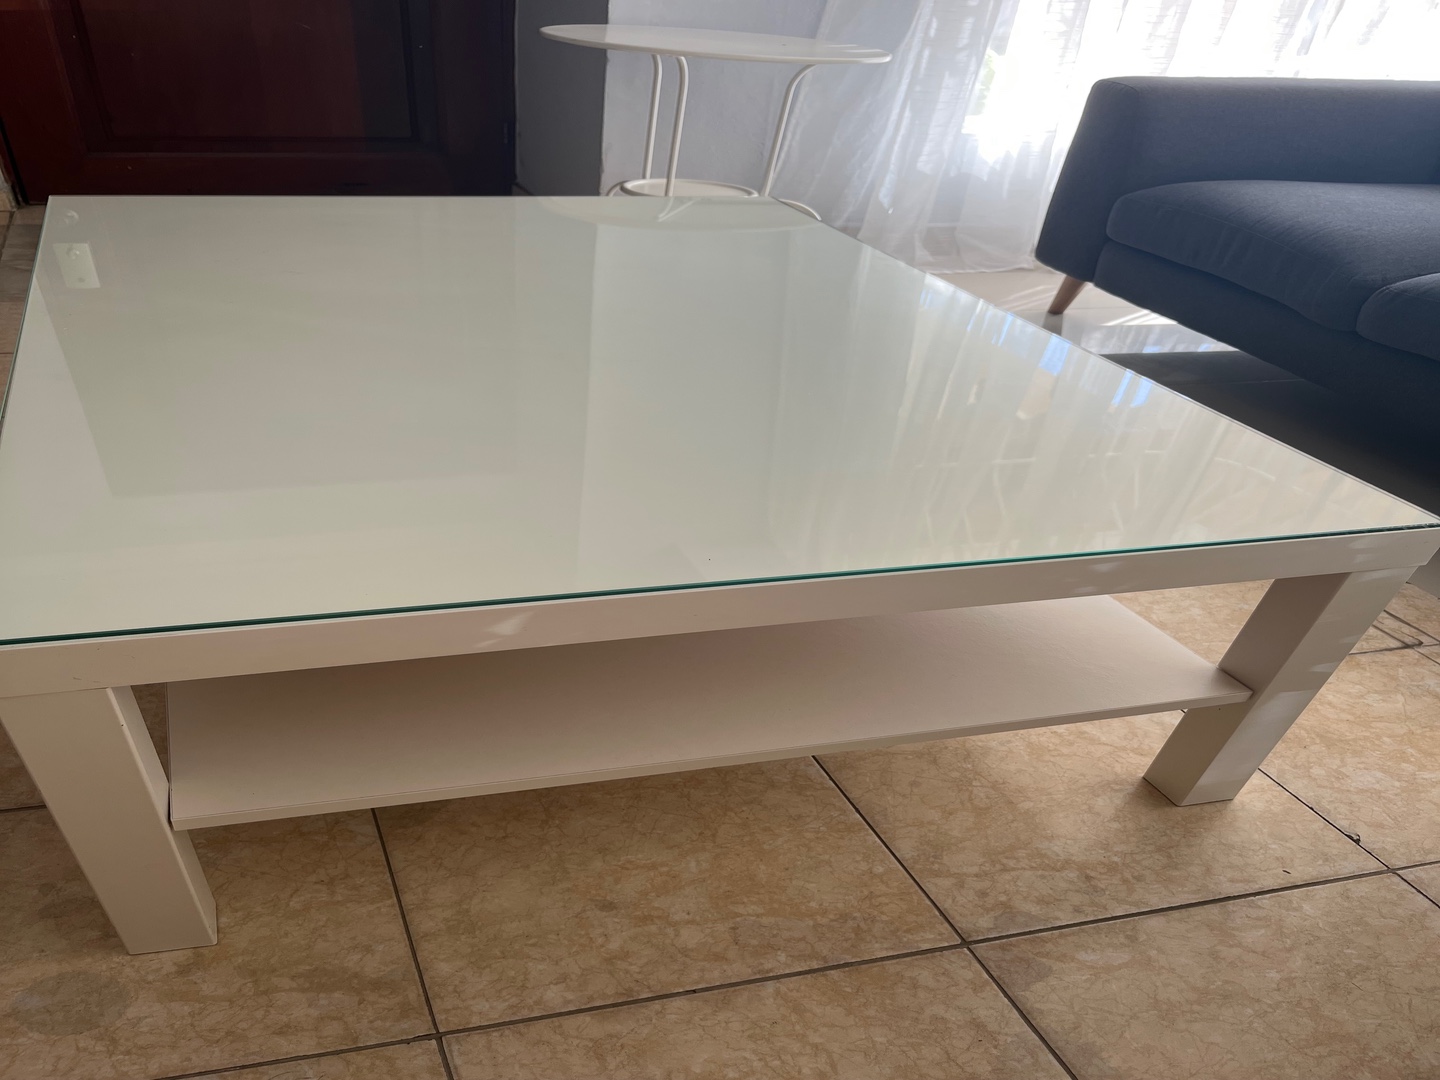 muebles y colchones - Vendo mesa centro de sala con tope cristal 2